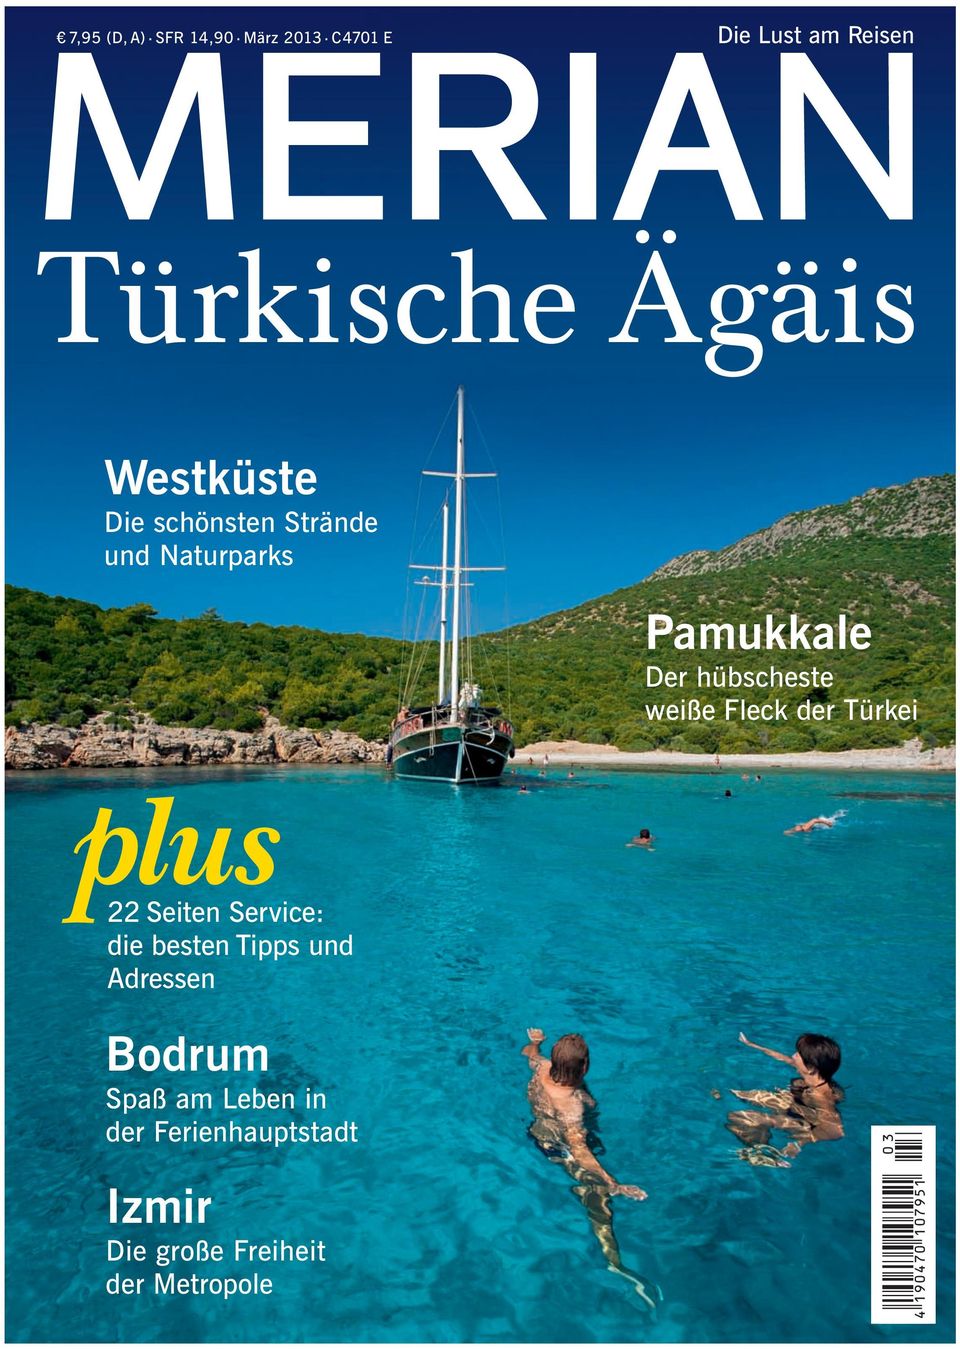 Naturparks Pamukkale Der hübscheste weiße Fleck der Türkei 22 Seiten Service: